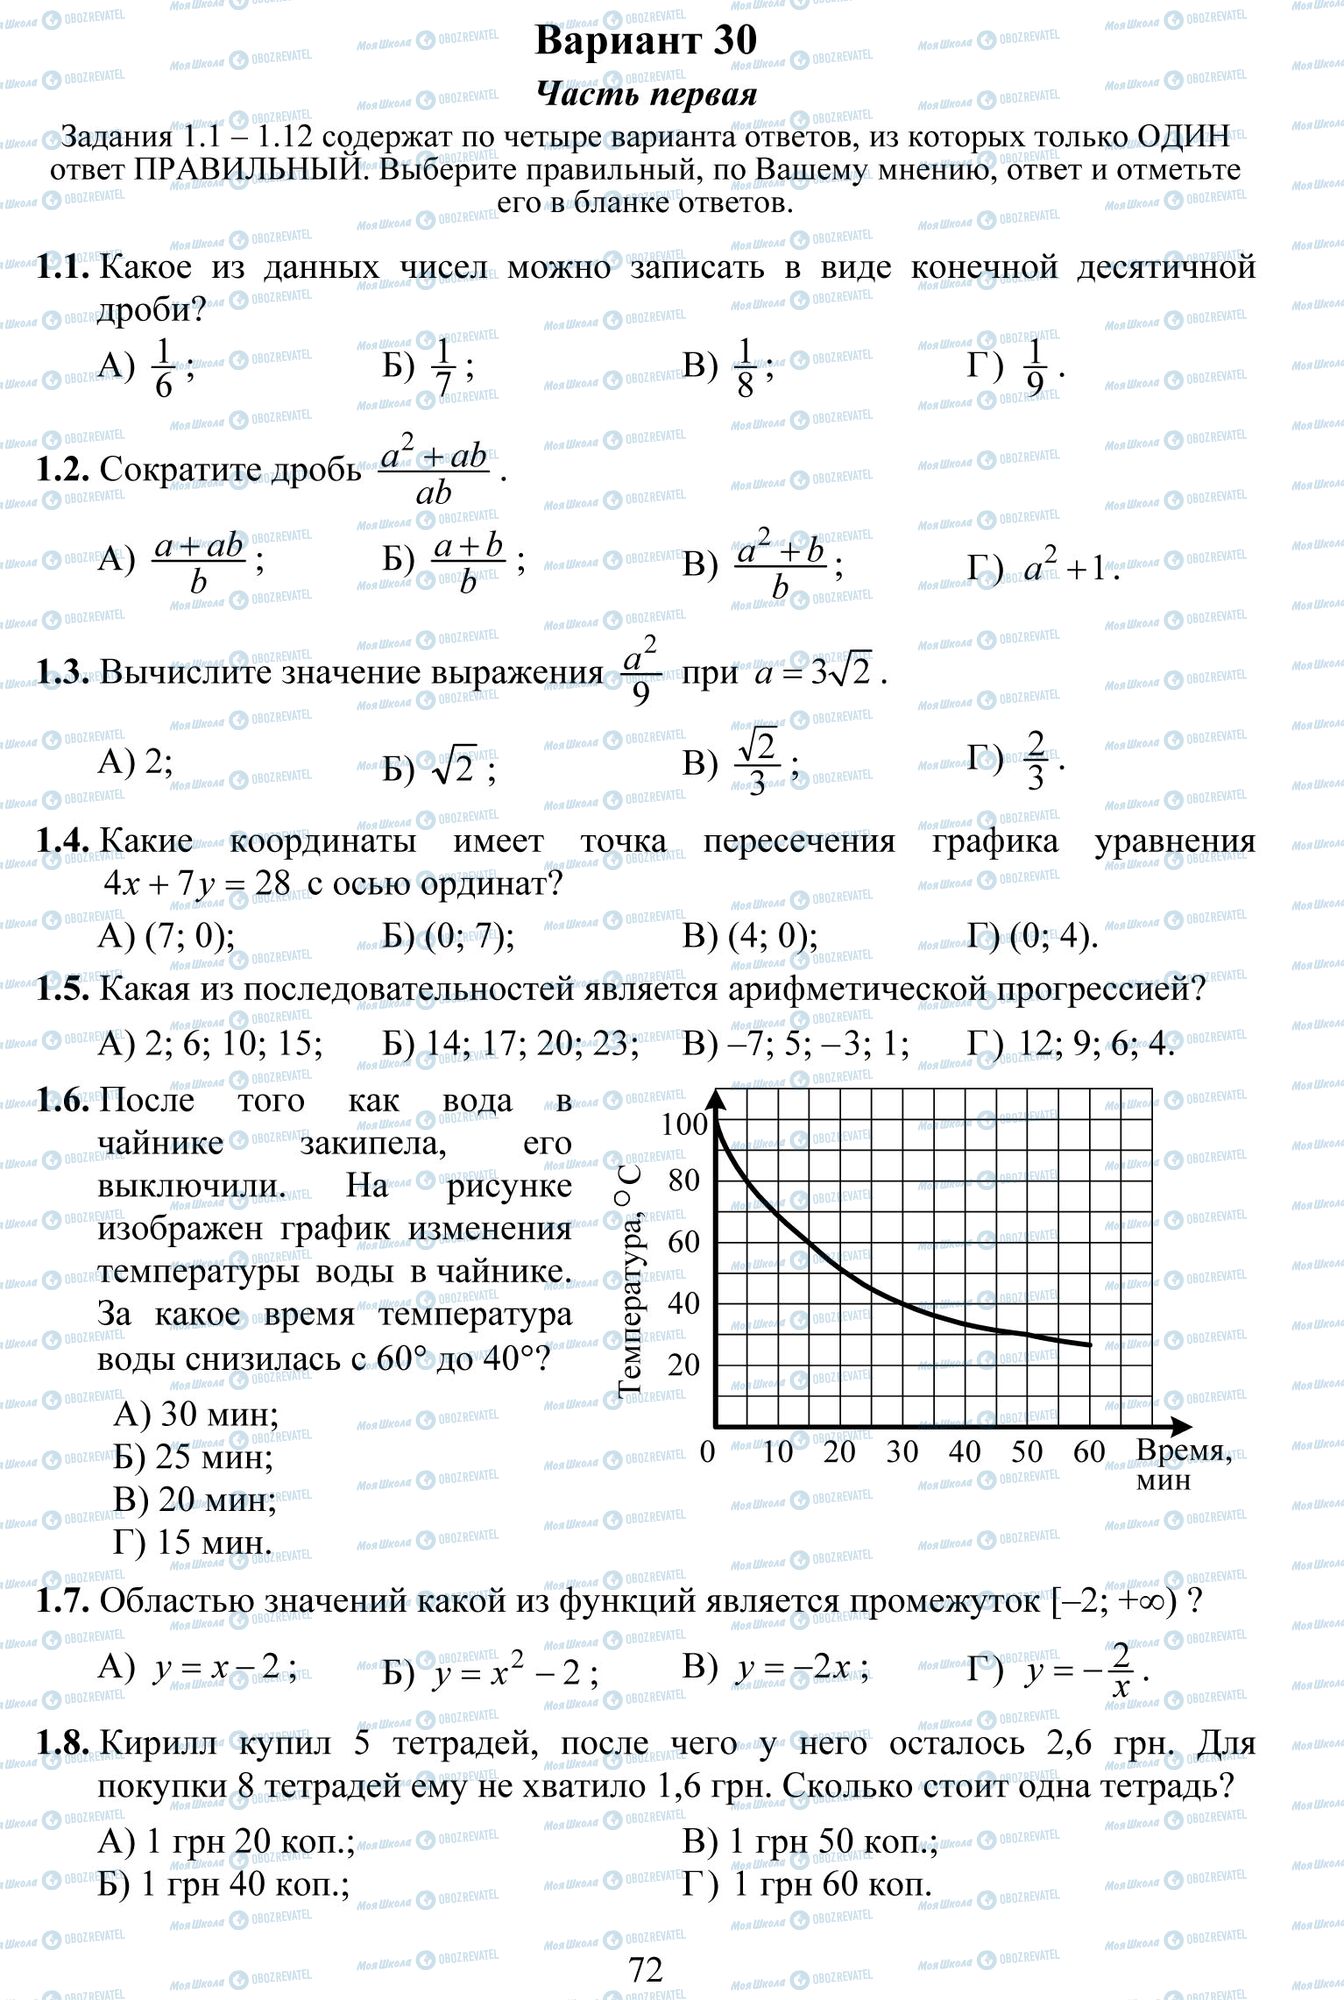 ДПА Математика 9 класс страница 1-8